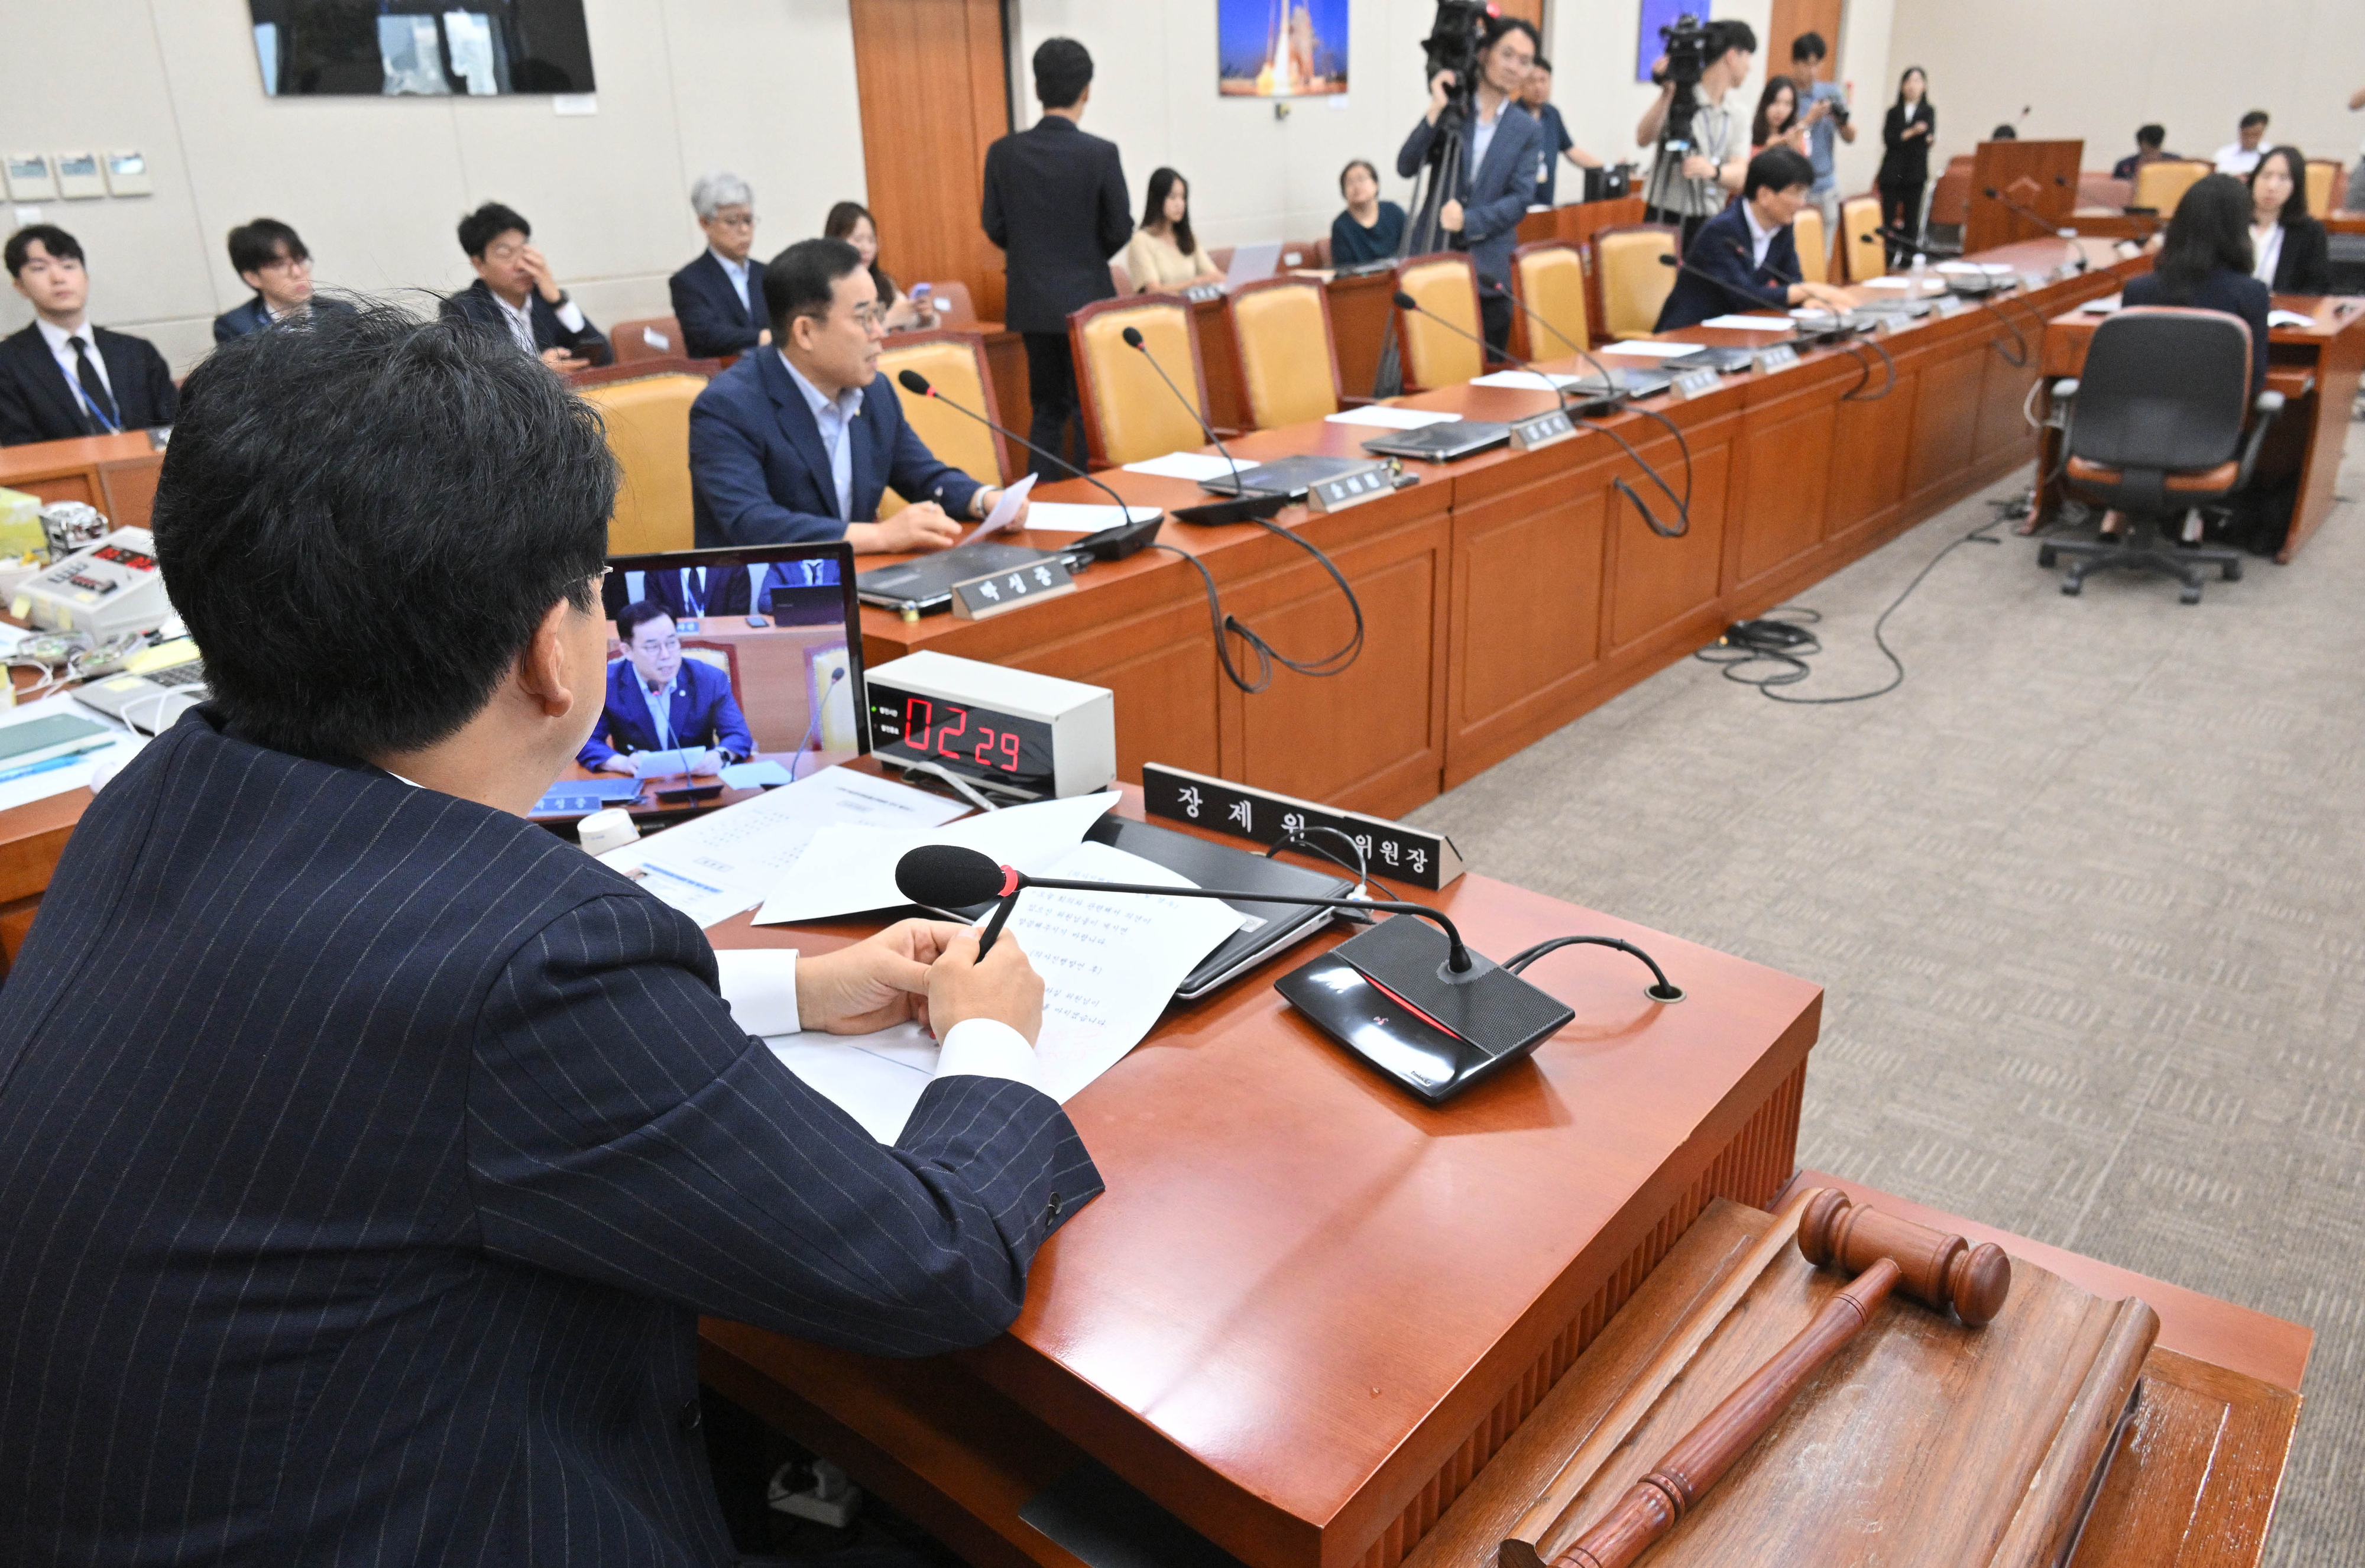 31일 국회에서 여당 의원들이 불참한 가운데 과학기술방송통신위원회 회의가 열리고 있다.  홍윤기 기자